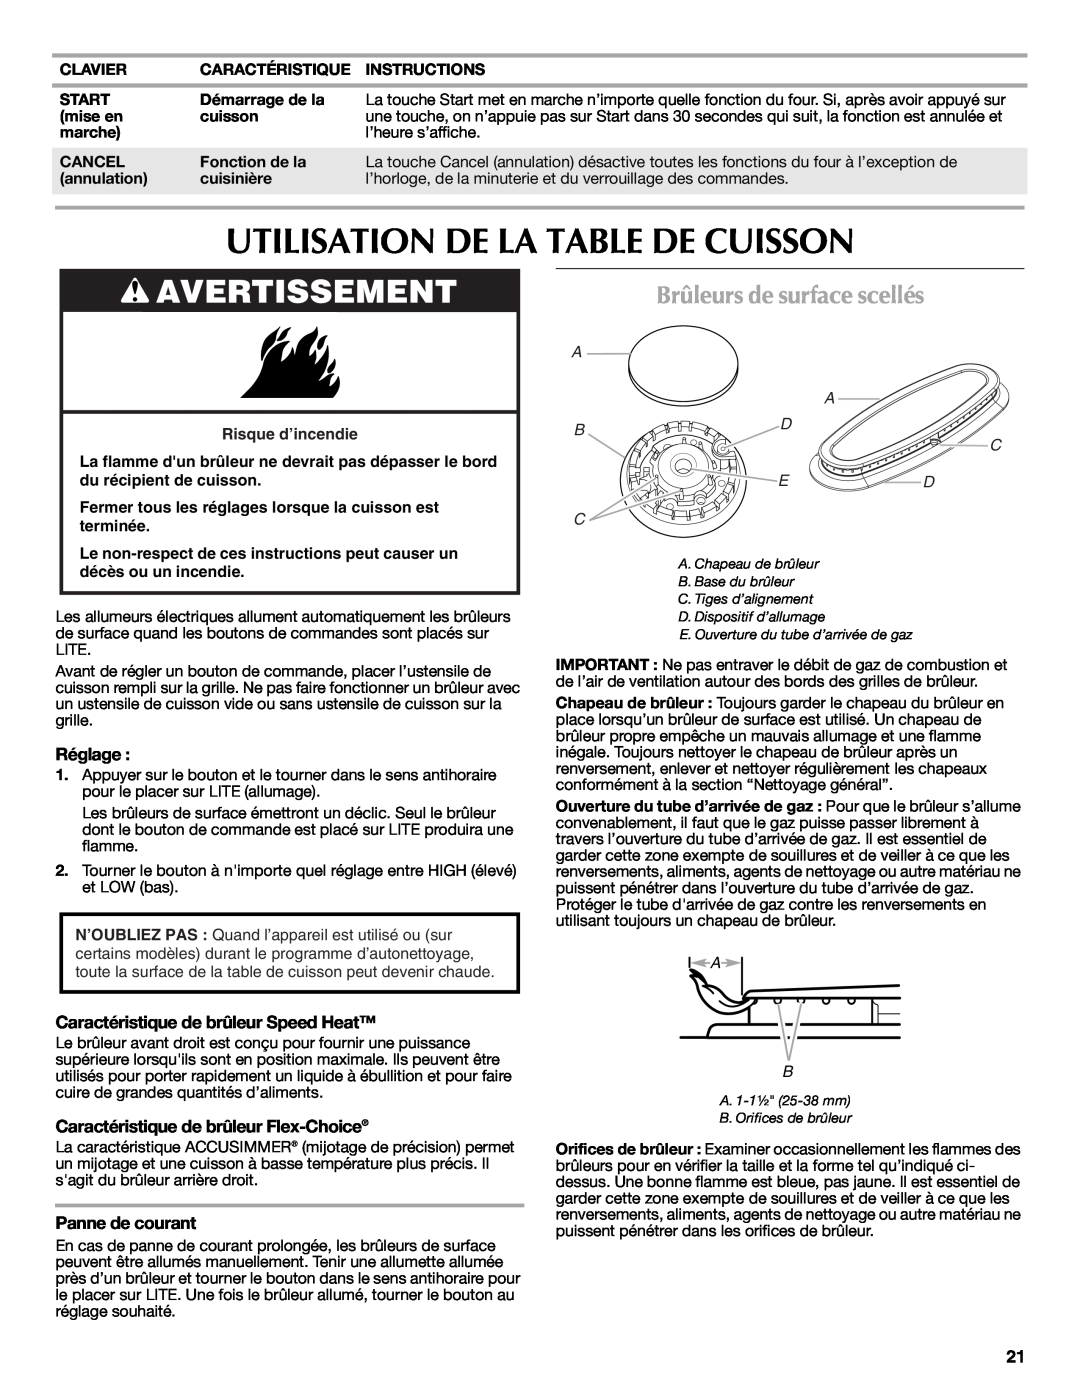 Maytag W10239464A Utilisation De La Table De Cuisson, Brûleurs de surface scellés, Avertissement, Réglage, A A B D C Ed C 